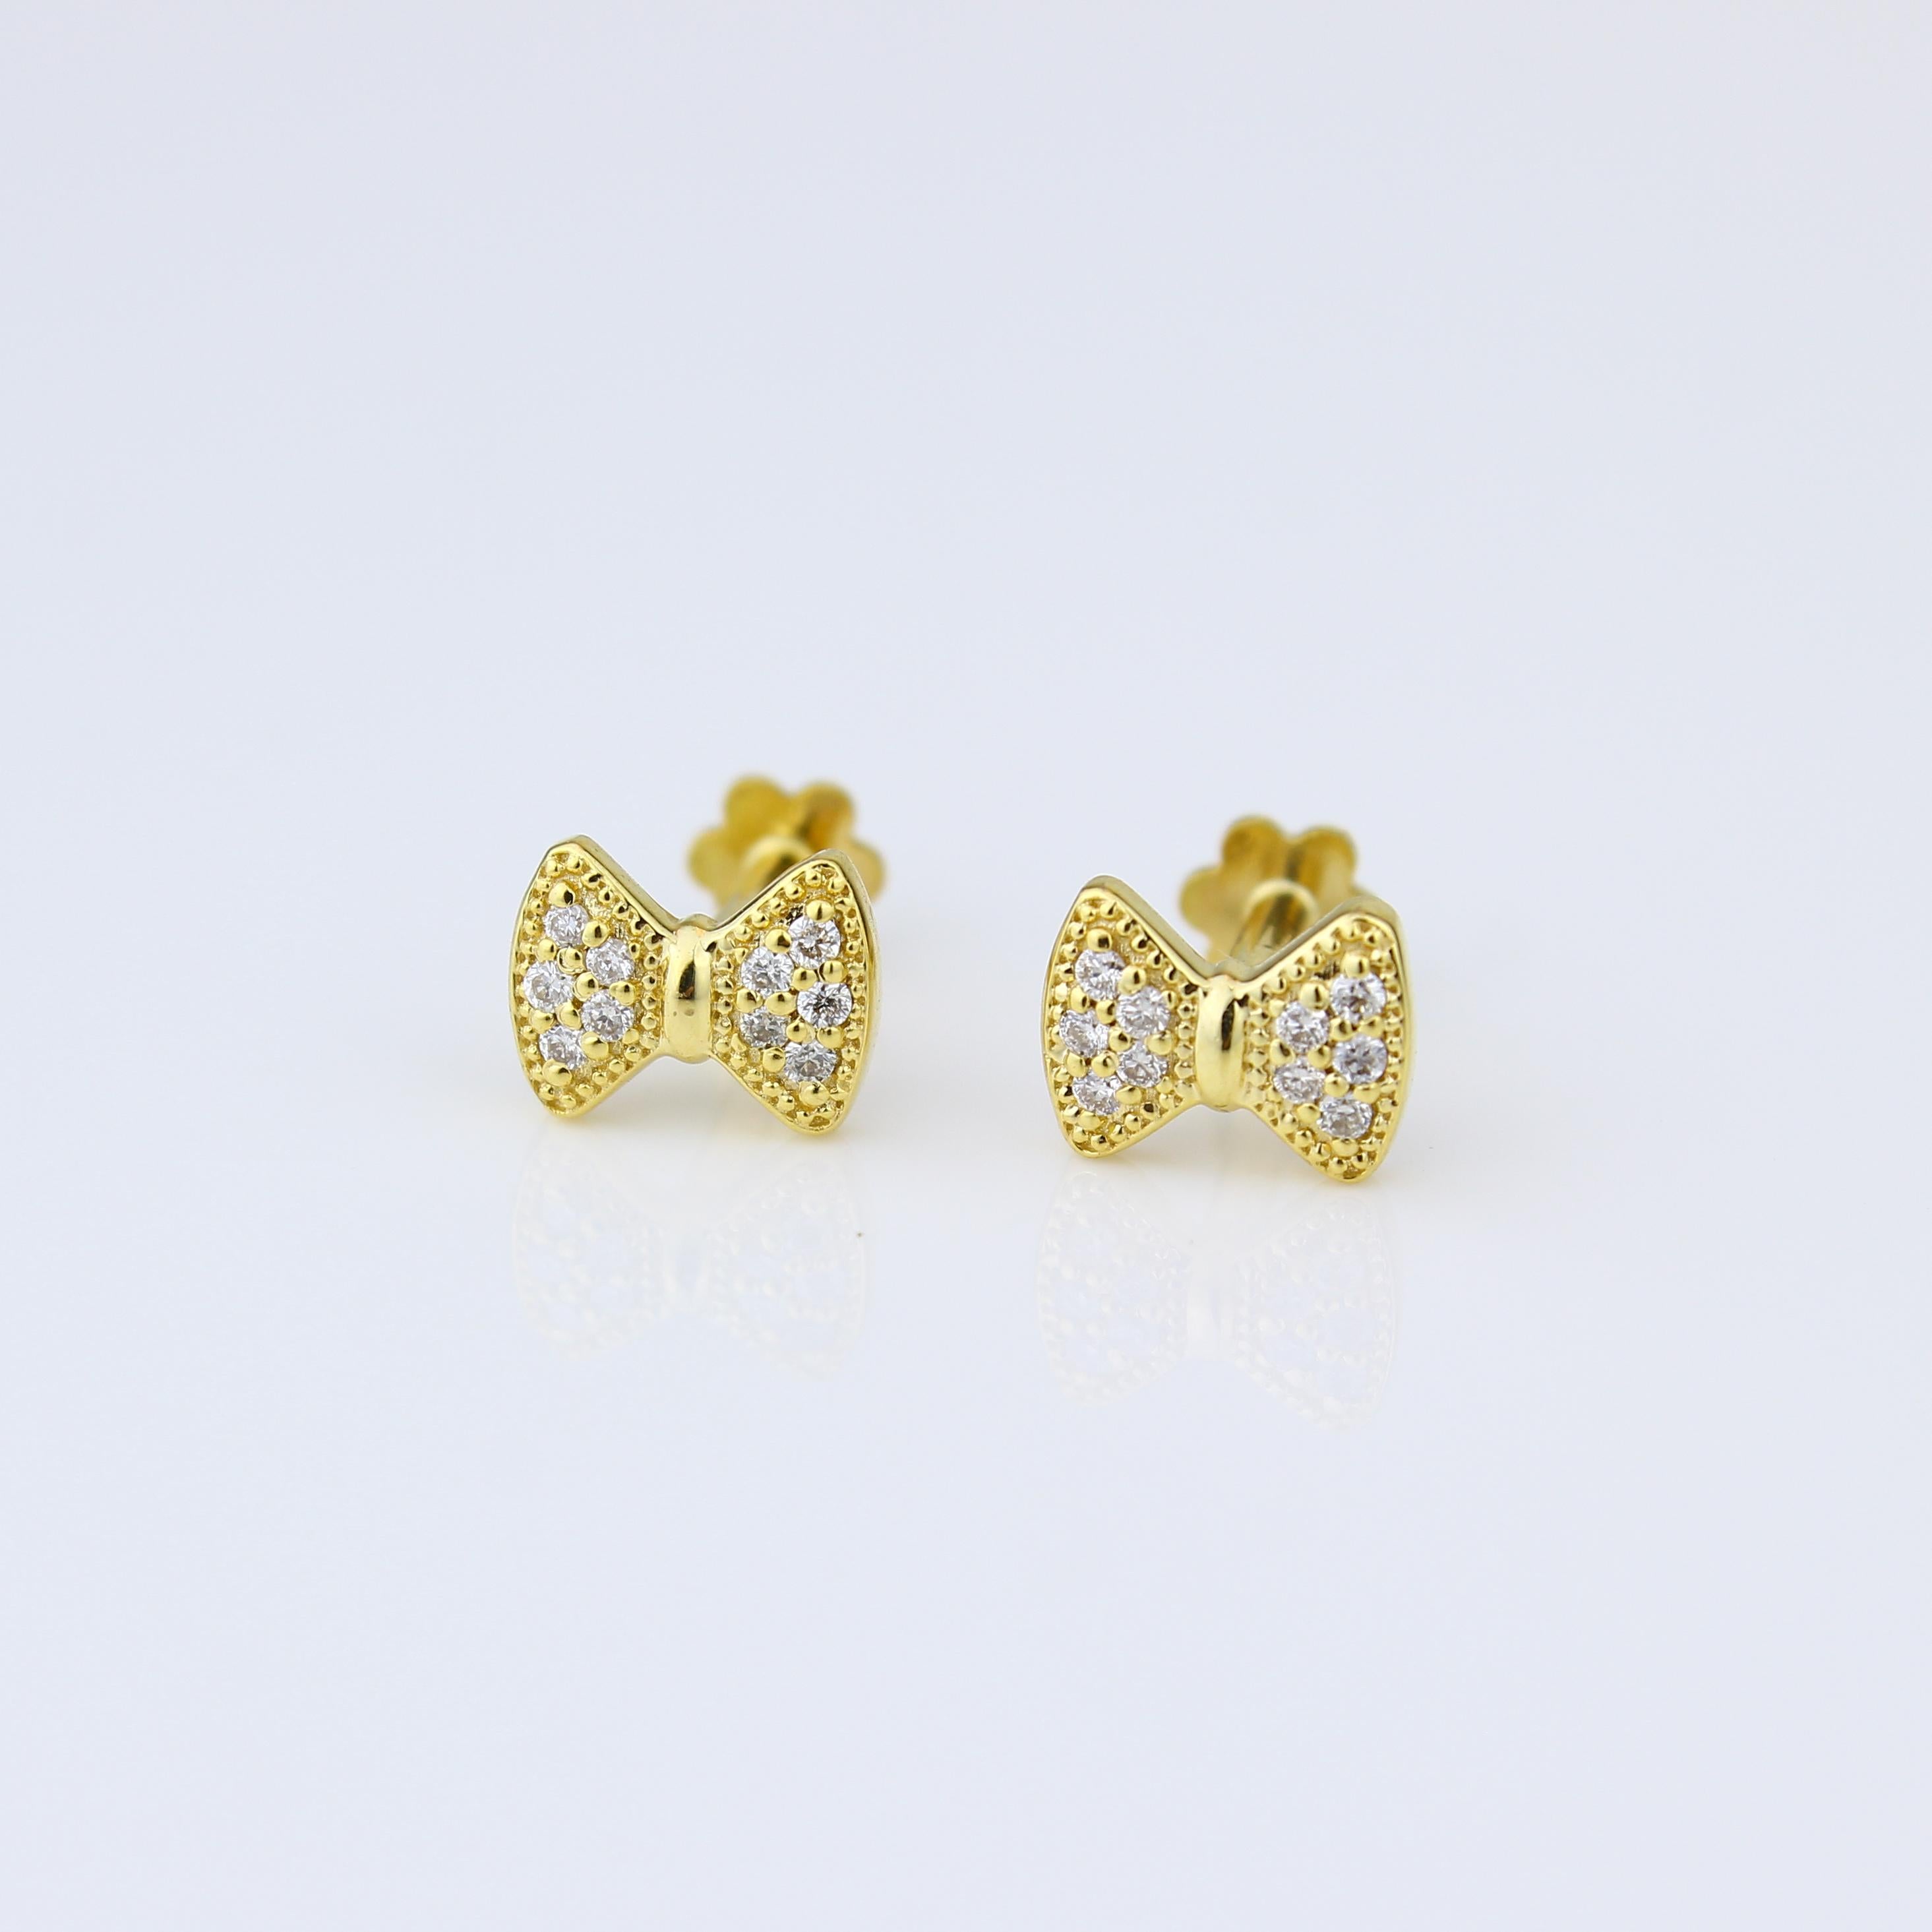 Elegante BOW-Diamant-Ohrringe für Mädchen (Kinder/Kleinkinder) in luxuriösem 18K Massivgold. Diese bezaubernden Ohrringe zeigen anmutige Schleifen, die mit zarten Diamanten verziert sind. Sie verleihen dem Stil Ihrer Kleinen einen Hauch von